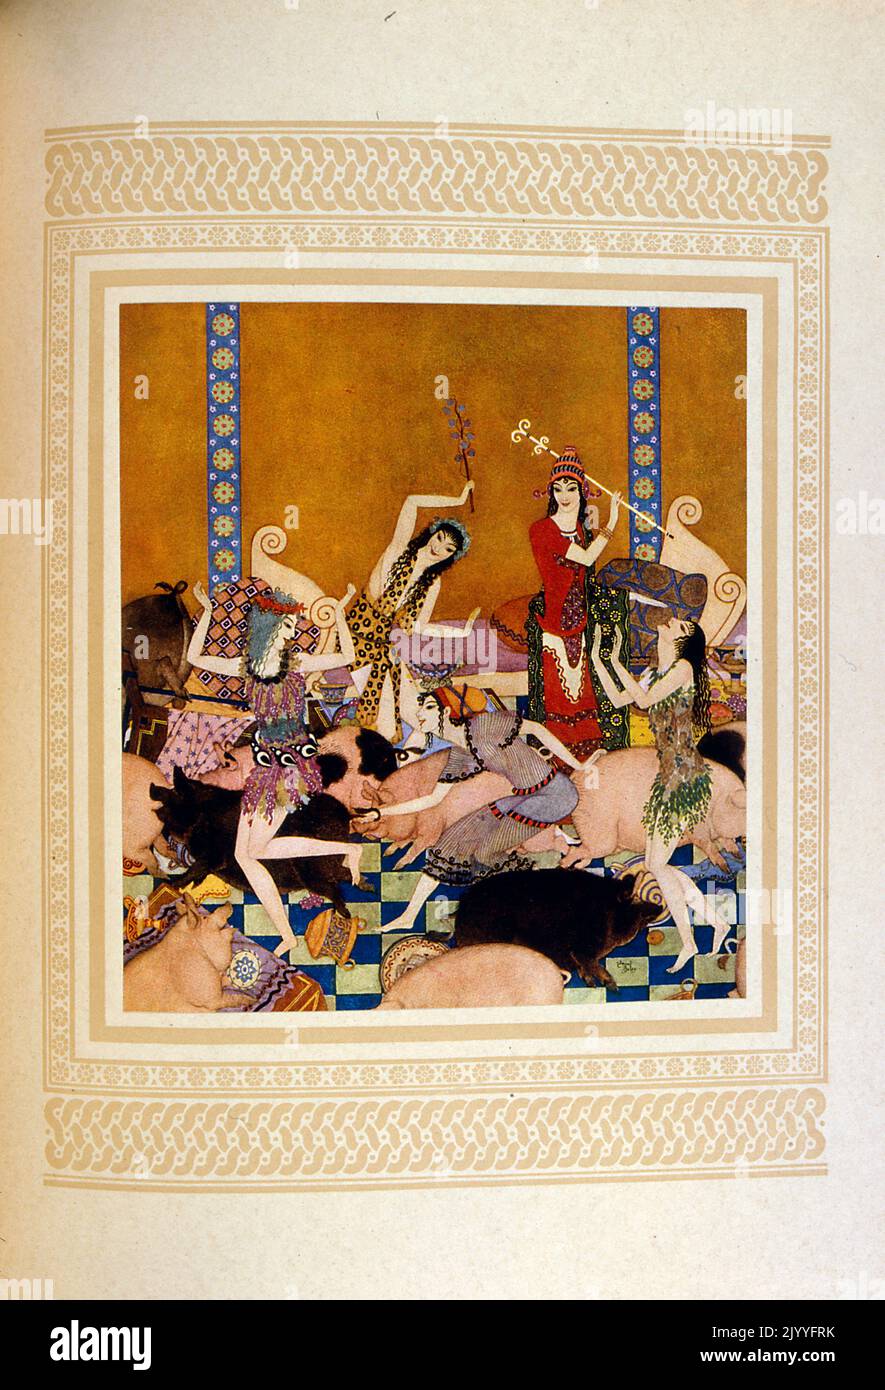 Illustrazione colorata delle Signore che ballano con i maiali nell'episodio in cui Odysseus è intrappolato sull'isola con Circe. Illustrato da Edmund Dulac (1882-1953), una rivista naturalizzata francese britannica e illustratore di libri. Foto Stock